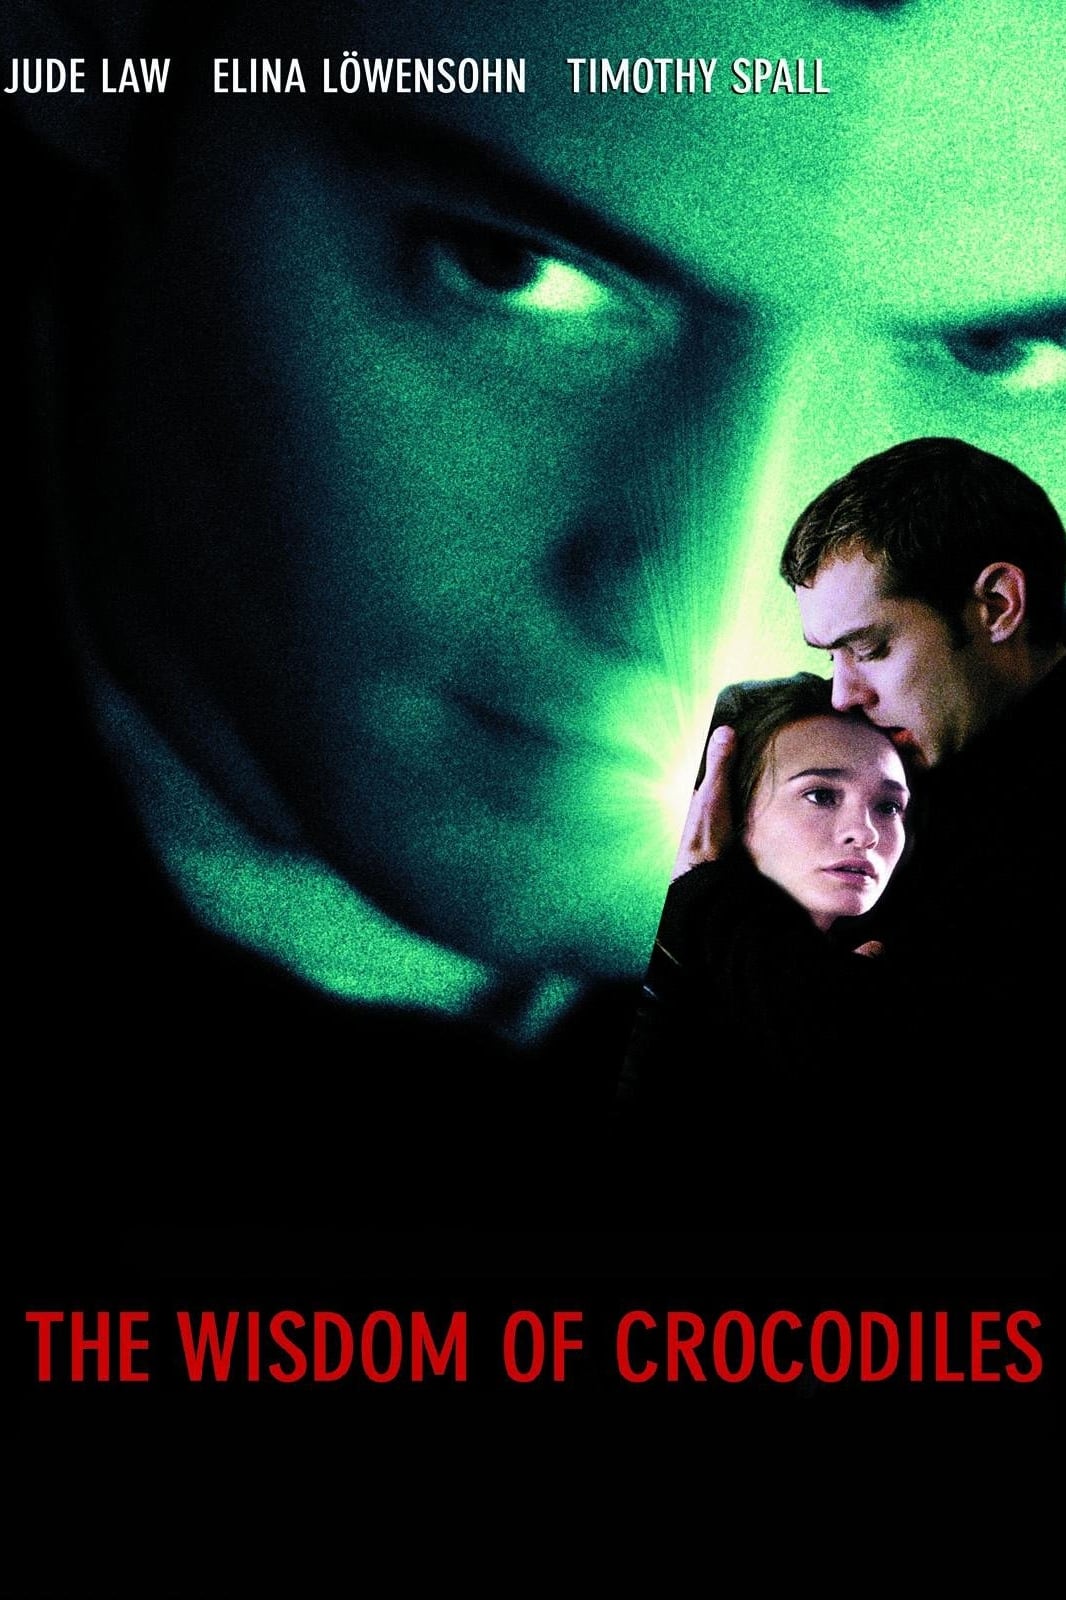 The Wisdom of Crocodiles (The Wisdom of Crocodiles) [1998]